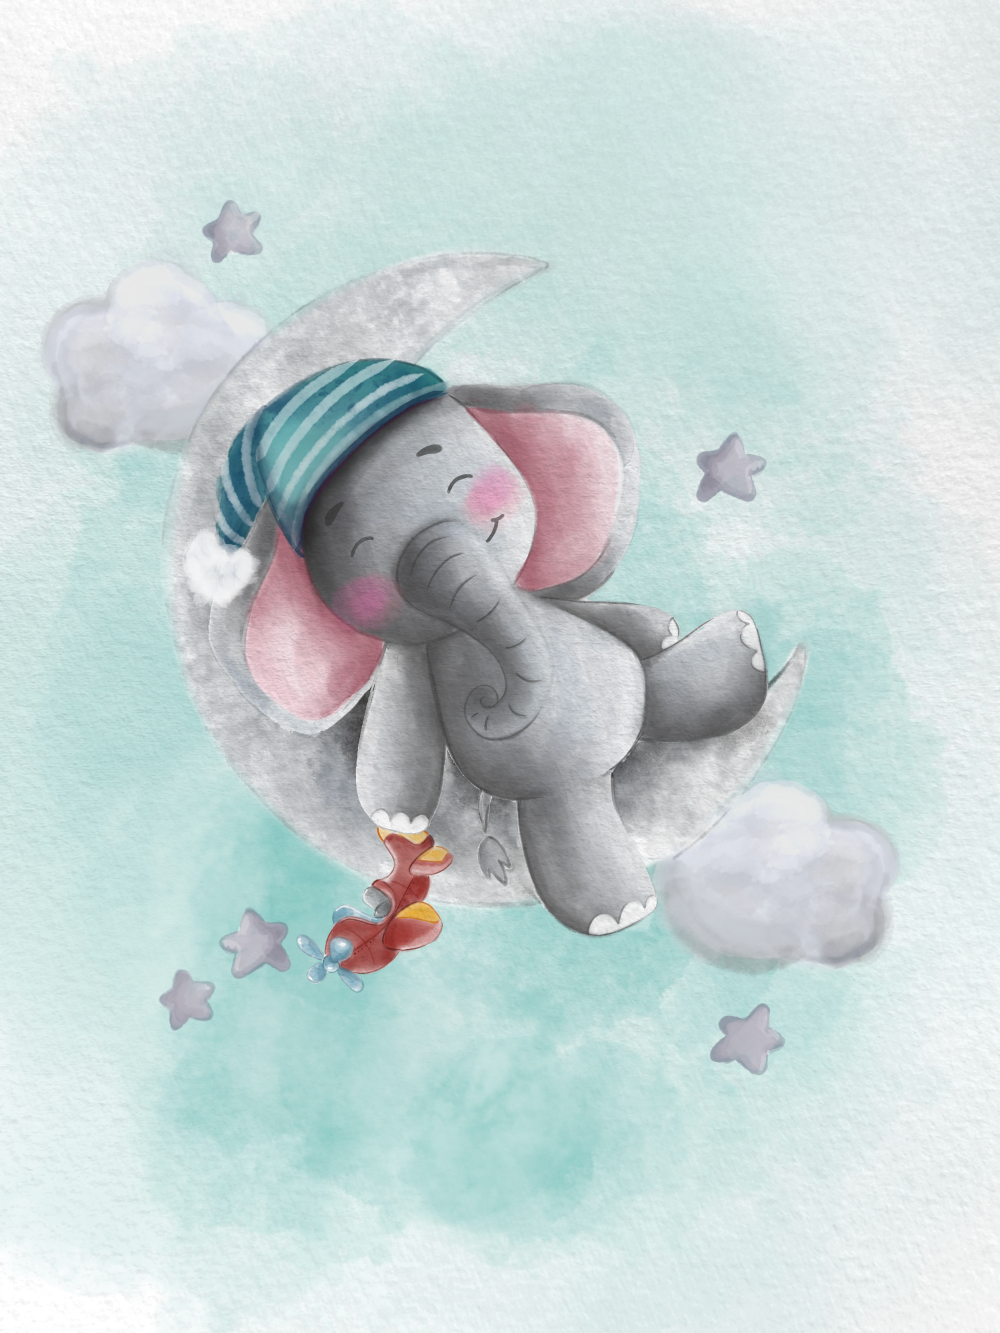 Originální dárek k narození dítěte, miminka, obraz slon na měsíci s čepičkou a letadlem, tyrkysová na plakátu | ZivotniOkamziky.cz